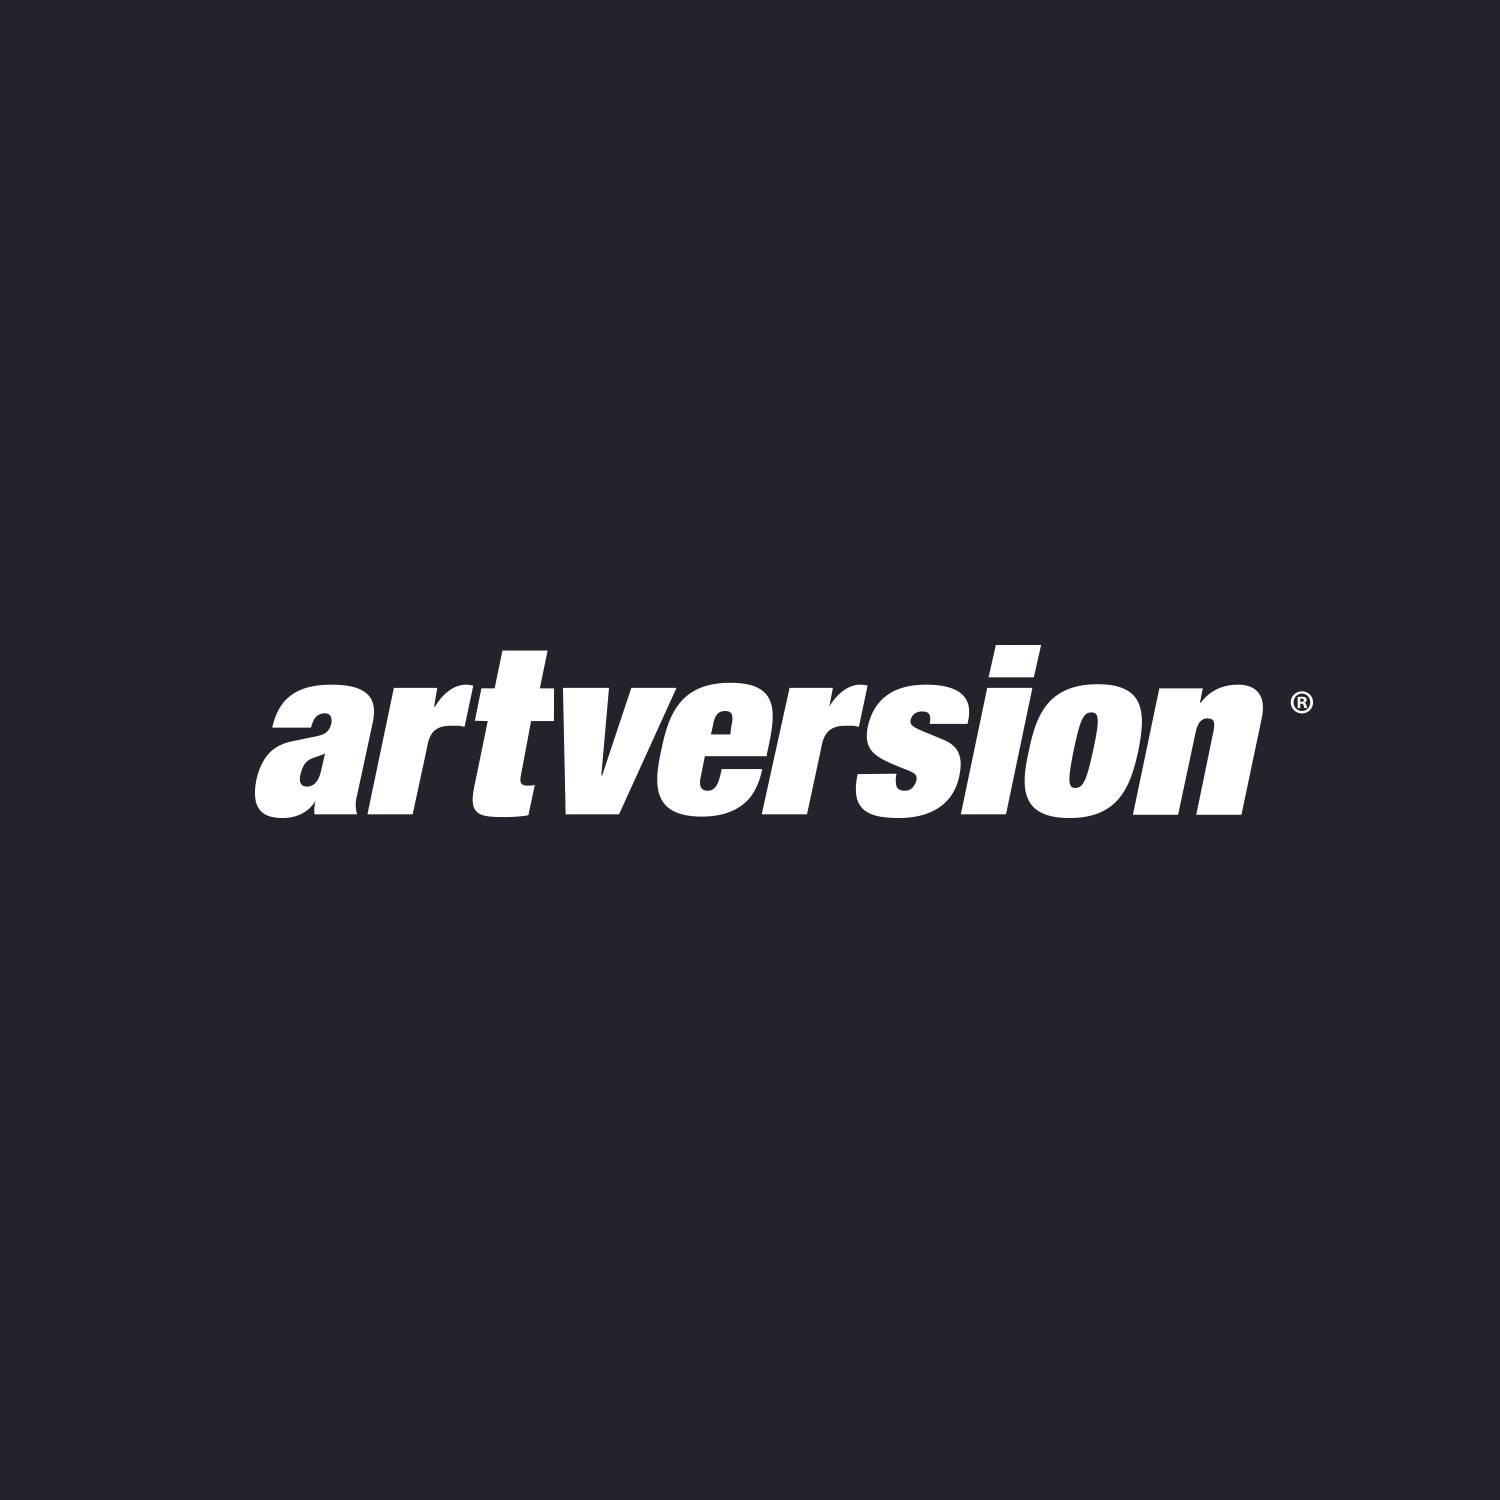 Company logo of ArtVersion Creative Agency